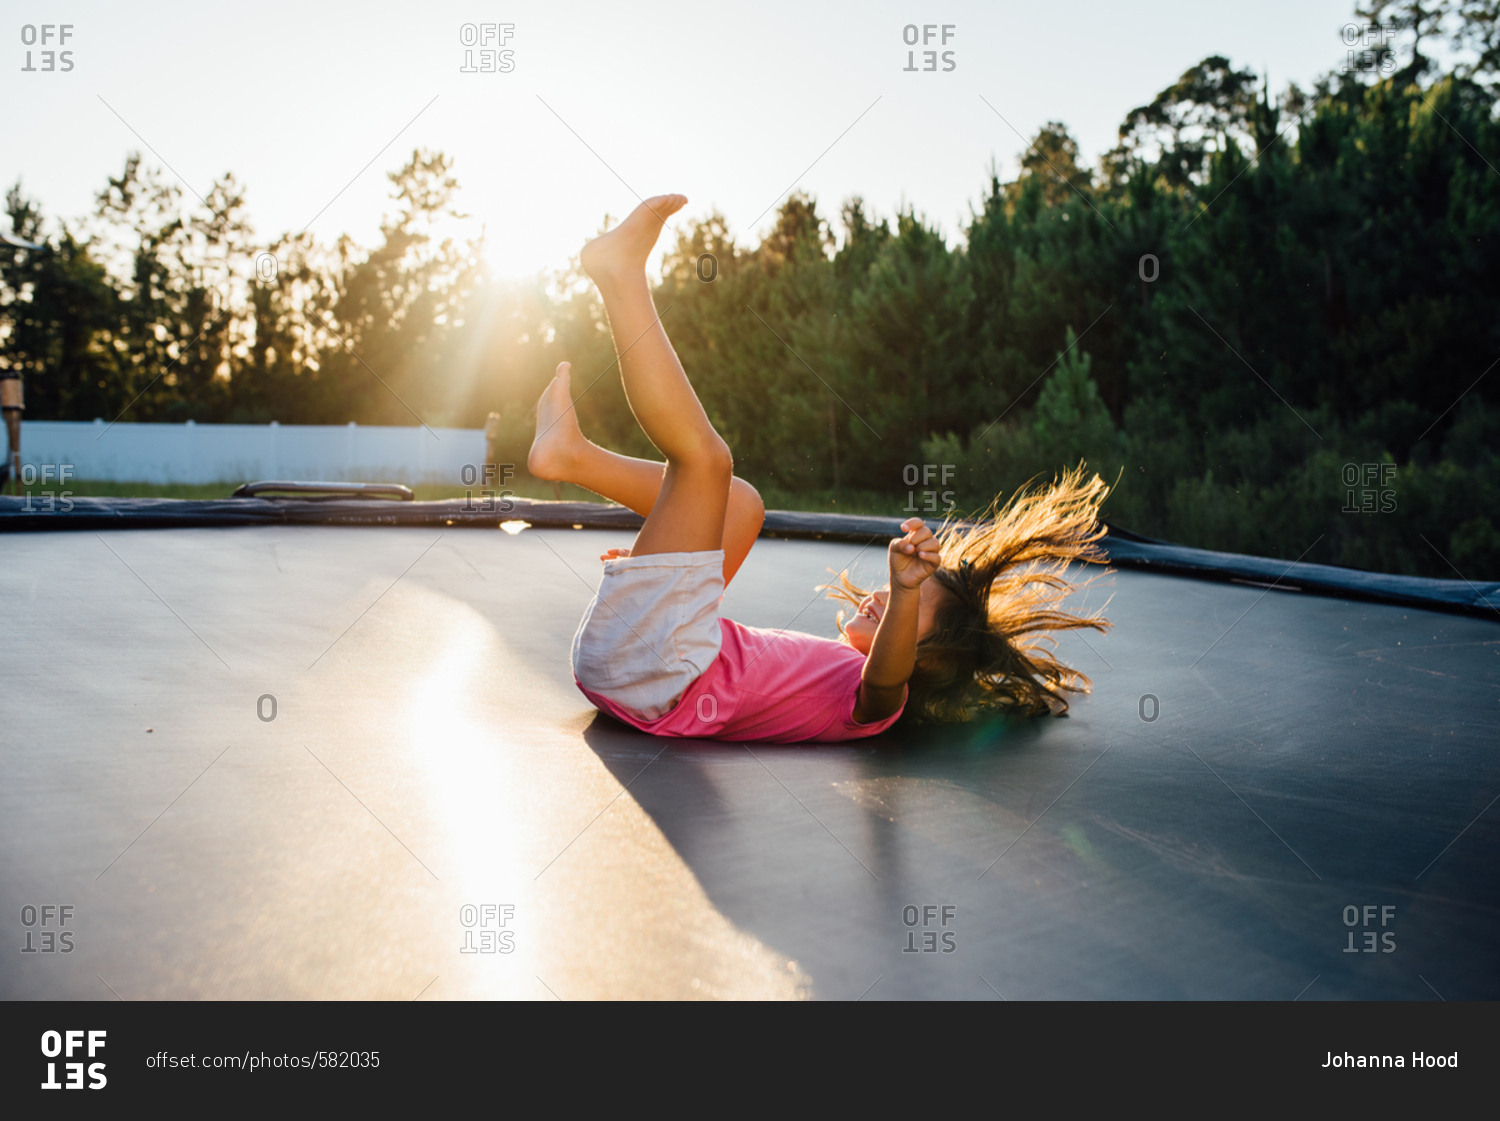 Girl landing on her back after doing a flip on trampoline